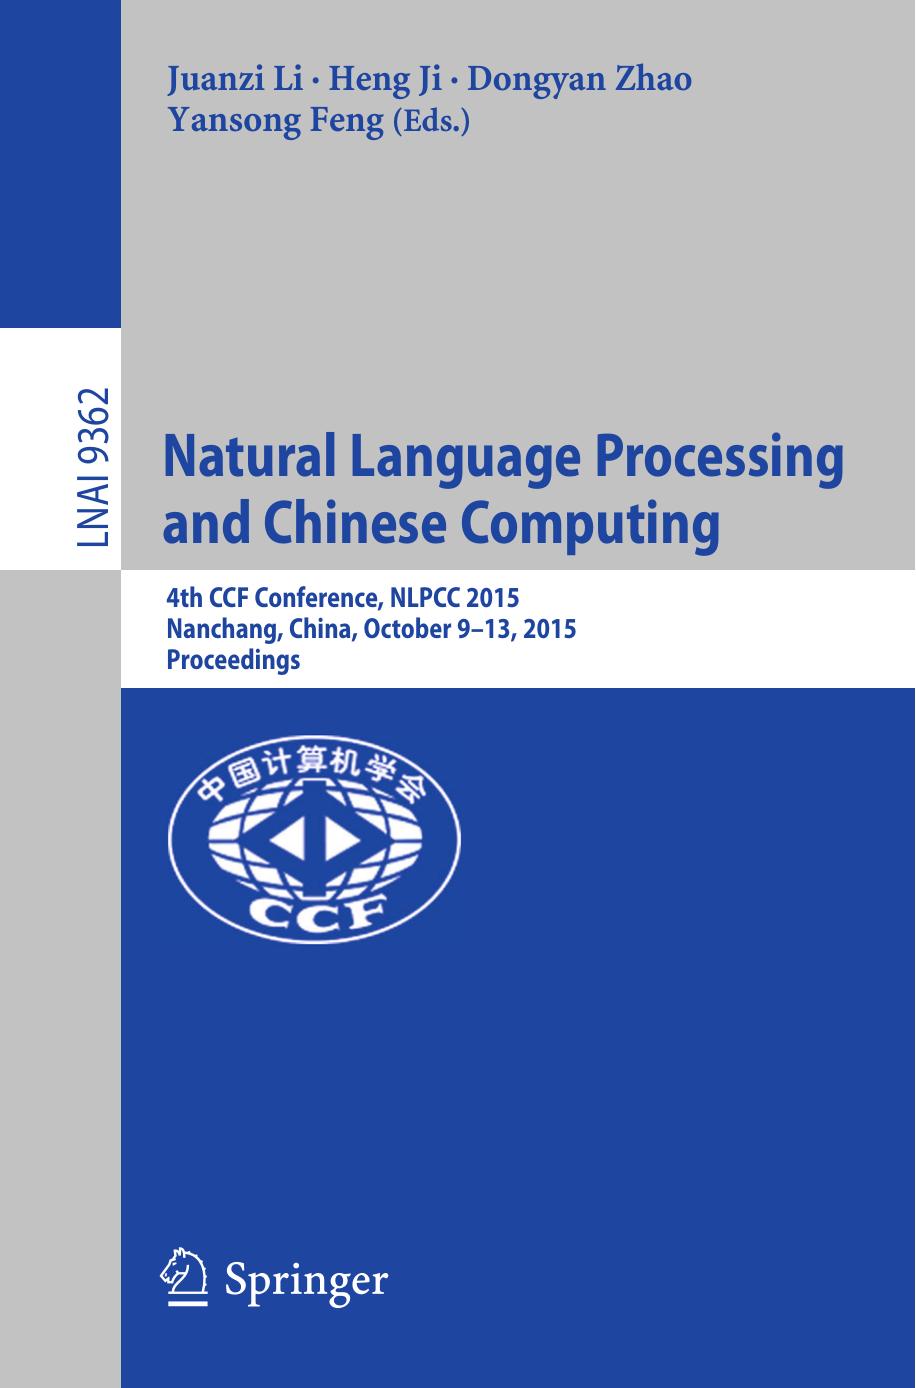 Natural Language Processing and Chinese Computing: 4th CCF Conference, NLPCC 2015, Nanchang, China, October 9-13, 2015, Proceedings